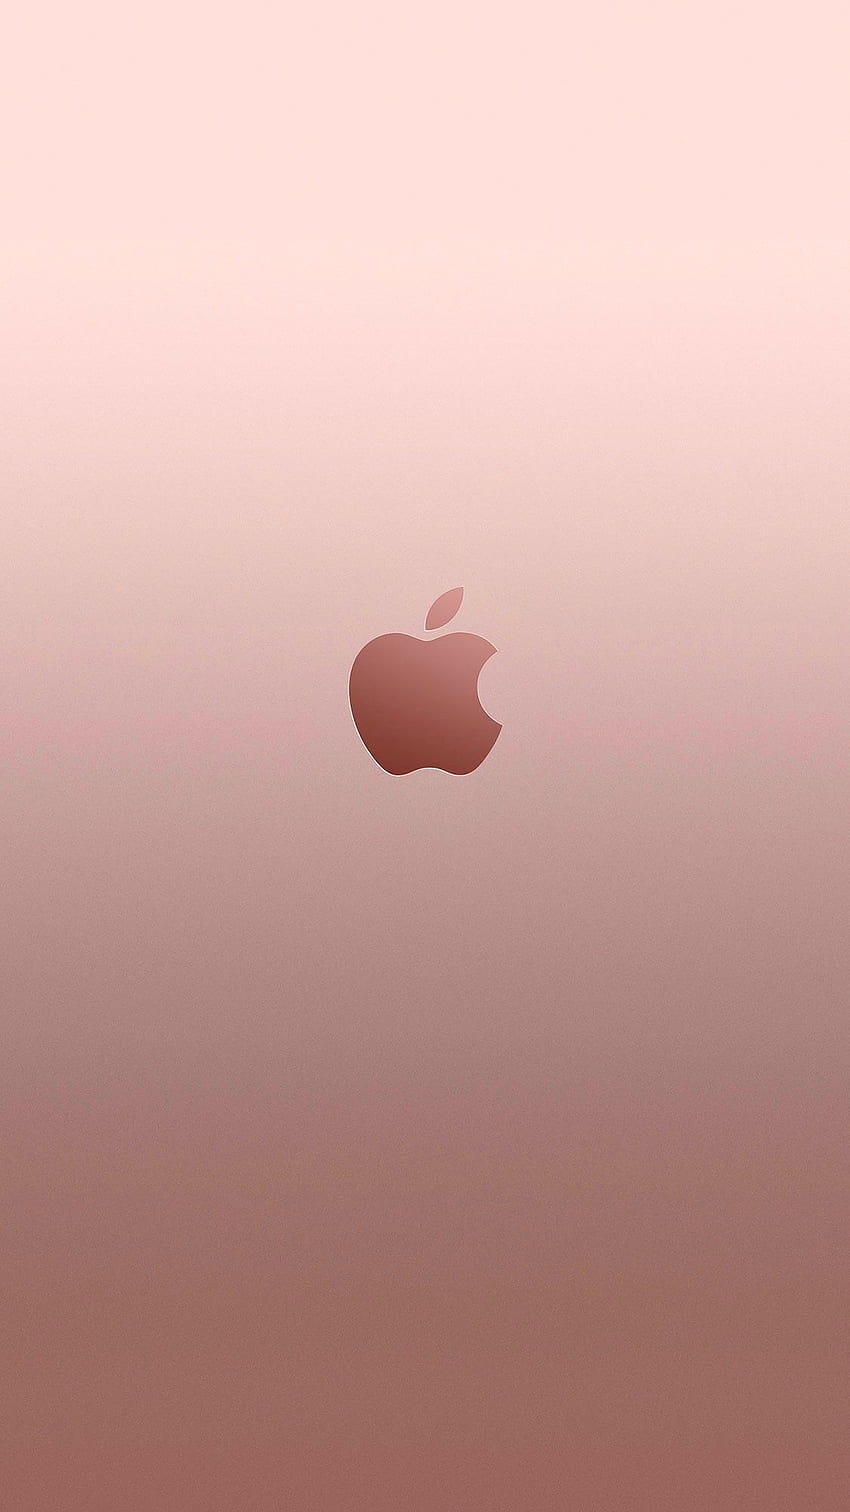 アップル ローズ ゴールド iPhone - ローズ。 t HD電話の壁紙